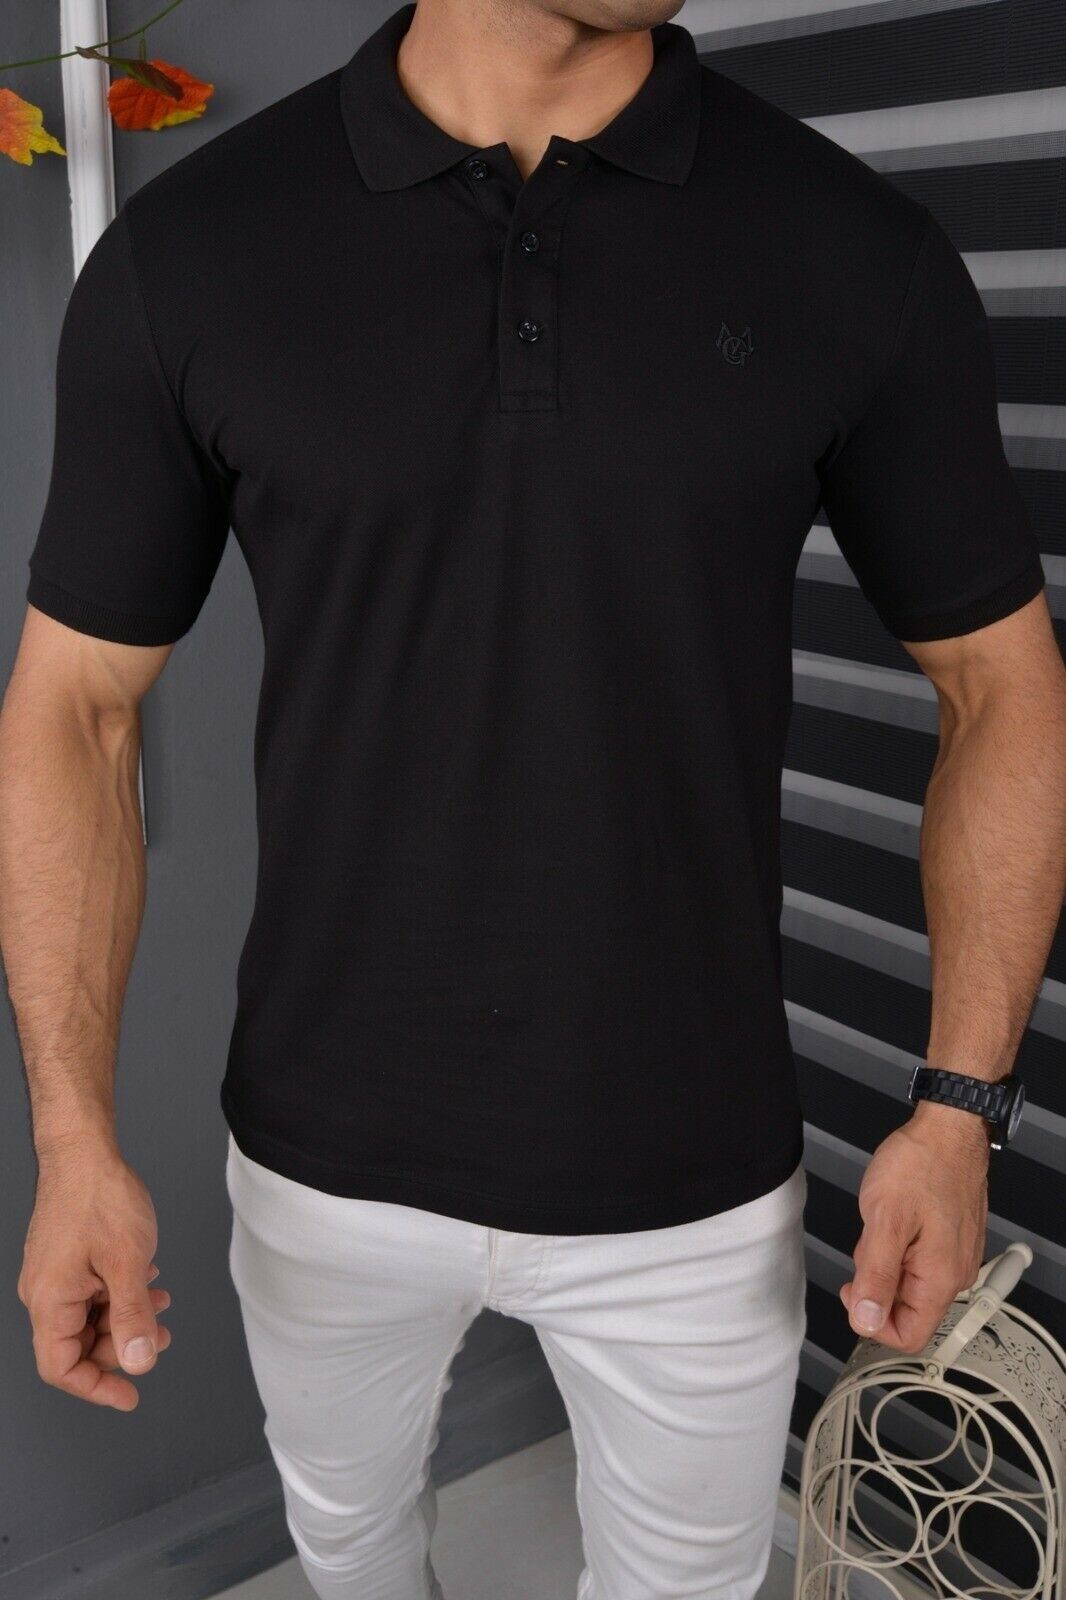 Jeans Premium Herren T-Shirt Polohemd Poloshirt Fit mit Schwarz Megaman Kurzarm Slim Baumwolle Basic Freizeit Kragen Poloshirt